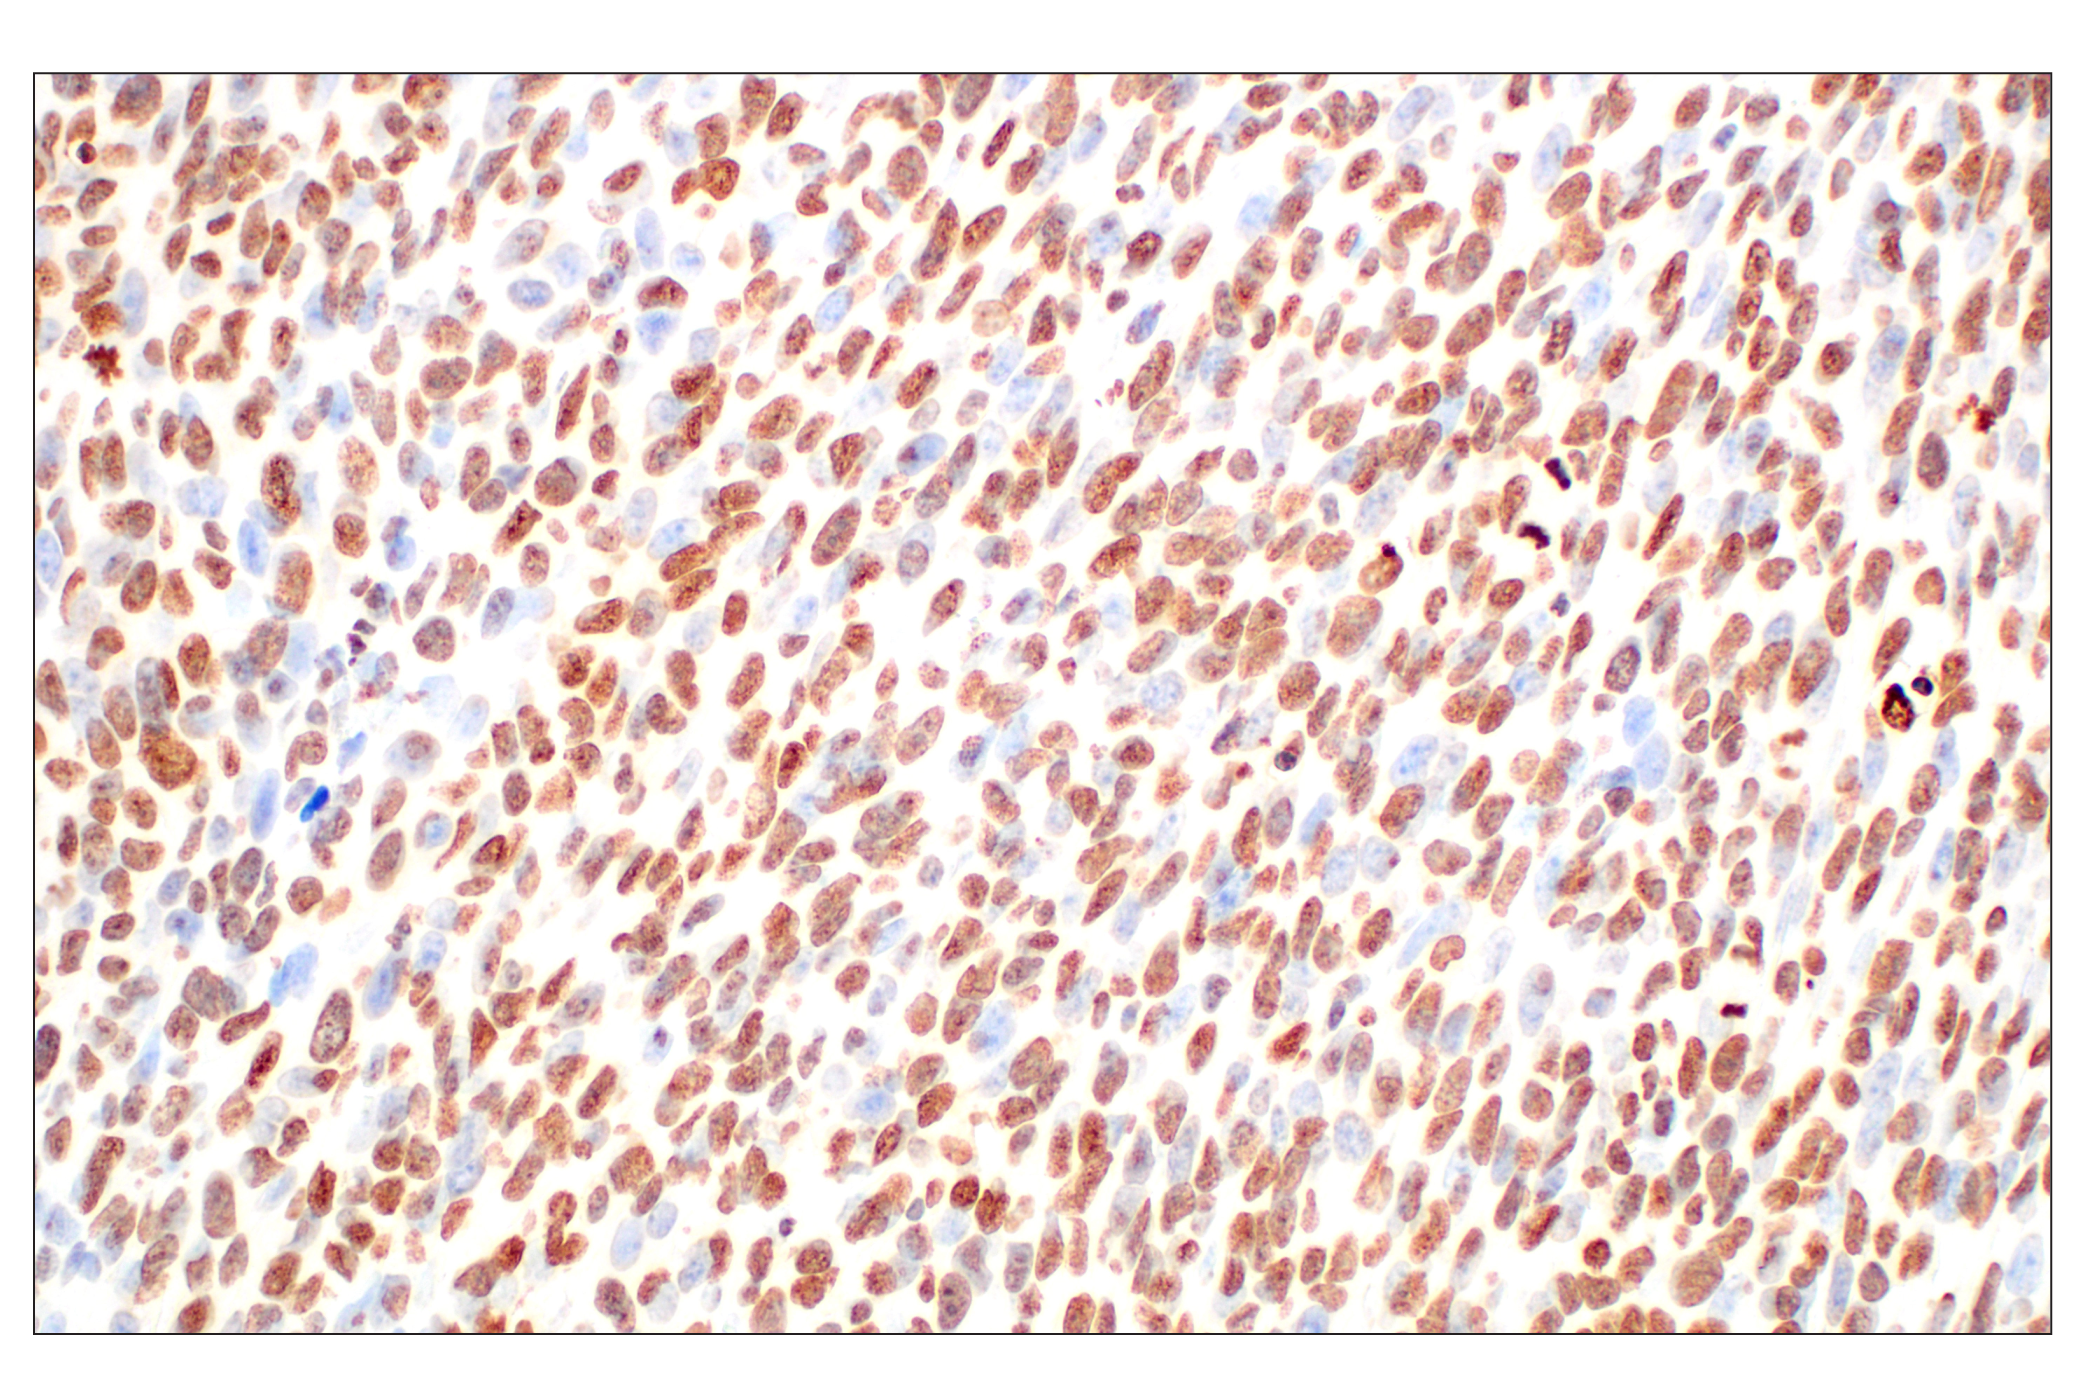  Image 17: Methyl-Histone H3 (Lys36) Antibody Sampler Kit